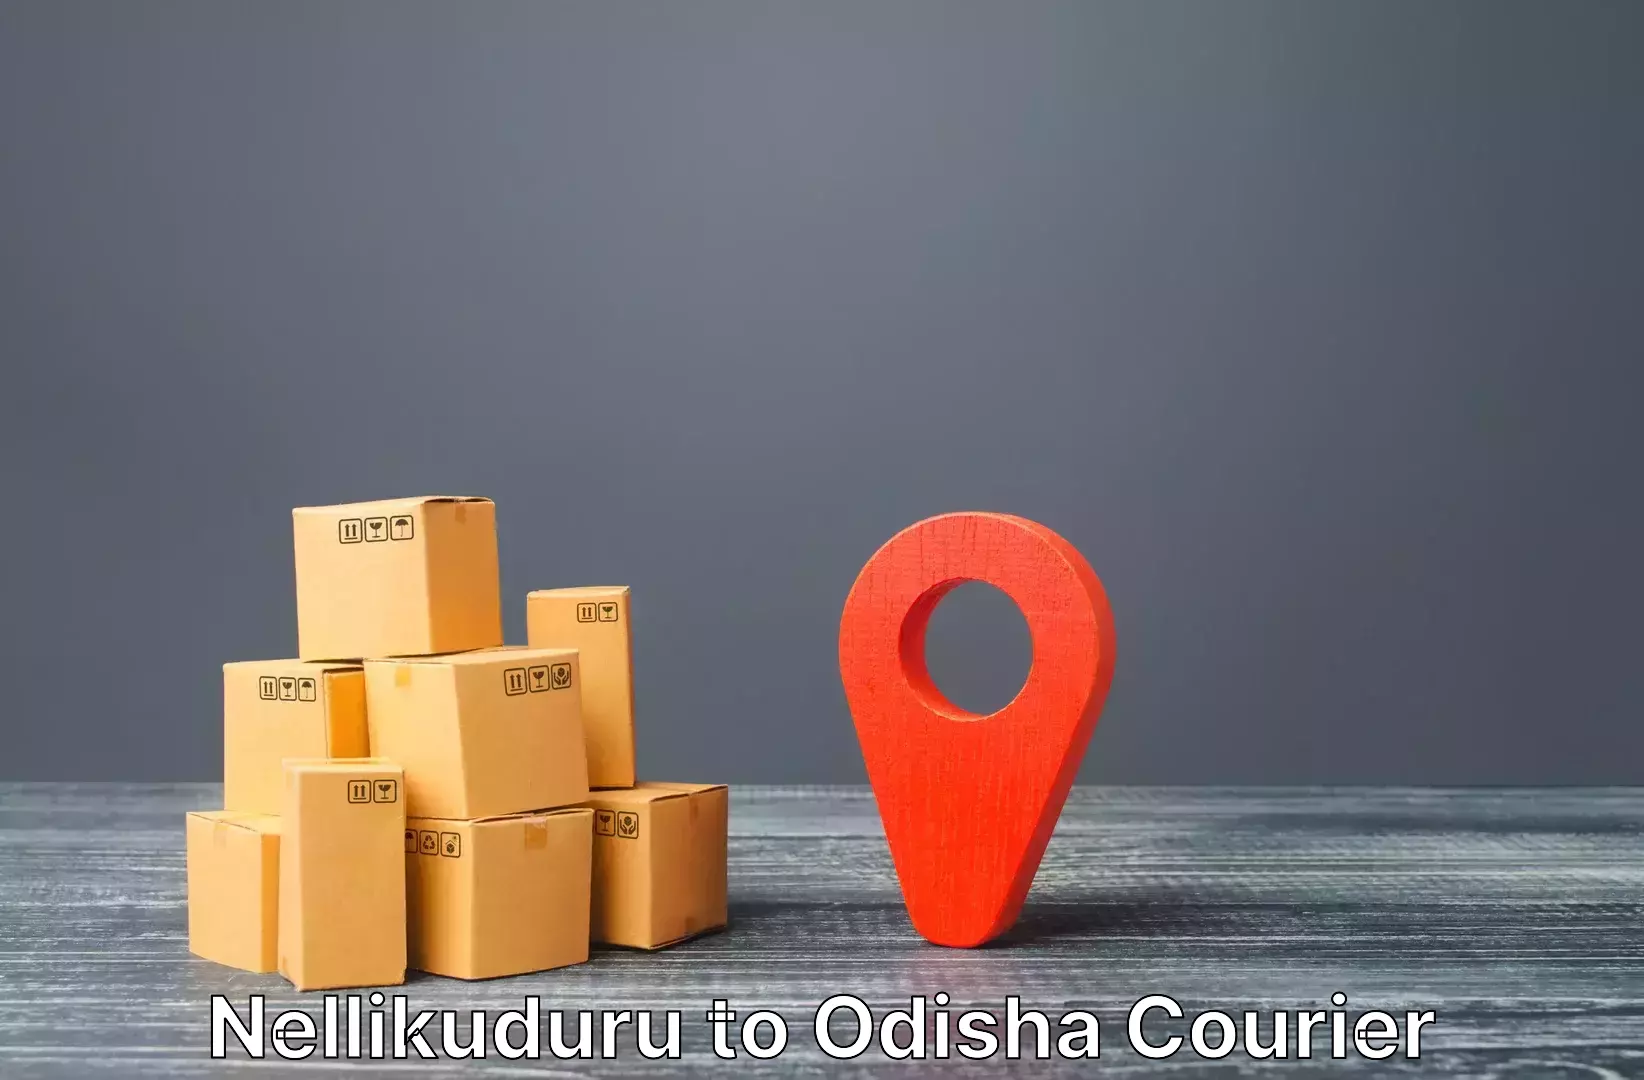 Personalized luggage shipping Nellikuduru to Dhamara